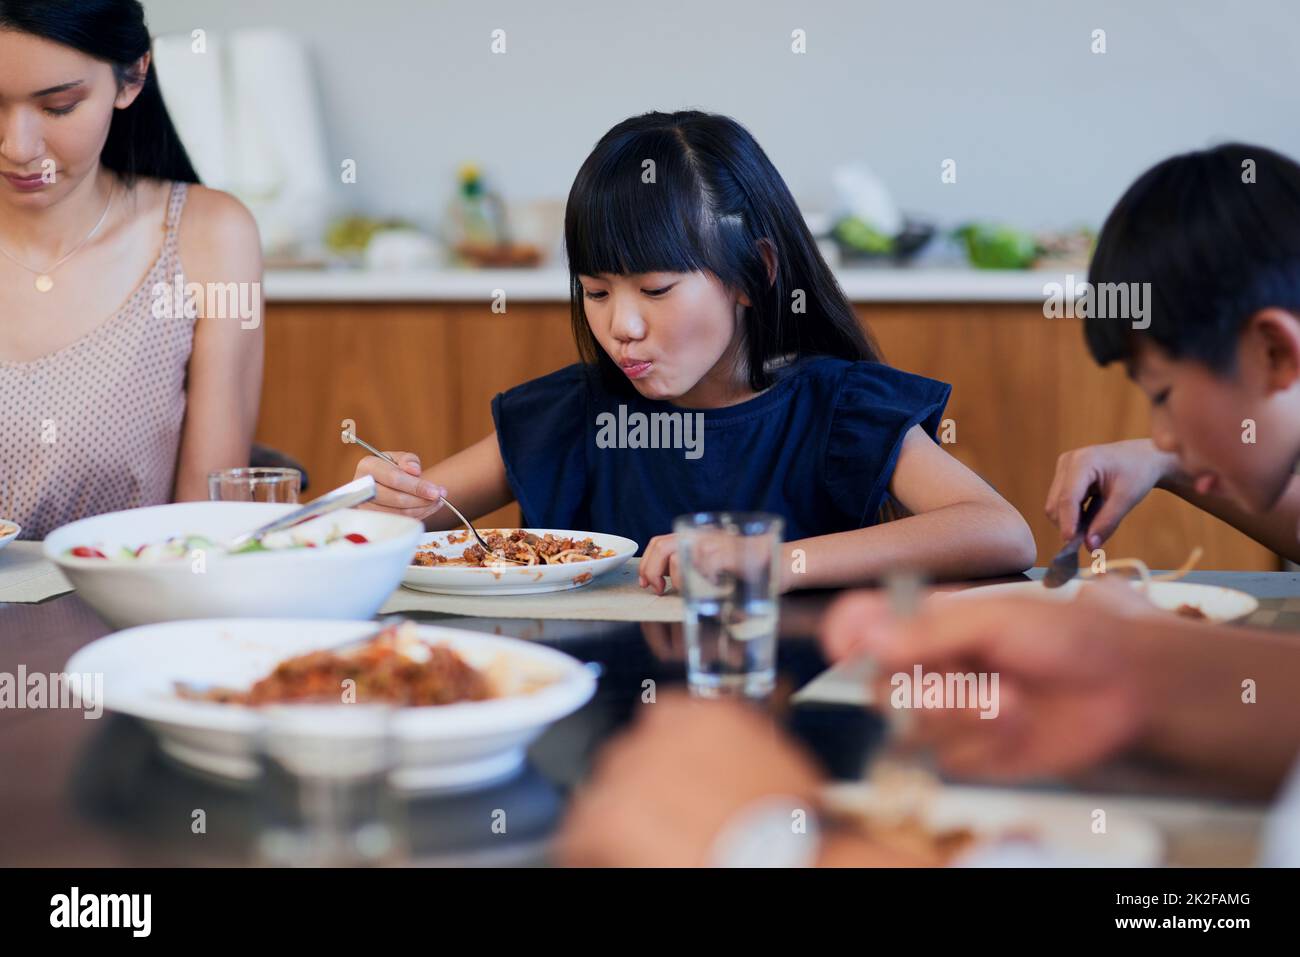 Ein Knaller von Yumminess. Aufnahme von zwei kleinen Kindern, die mit ihrer Mutter zu Hause essen. Stockfoto